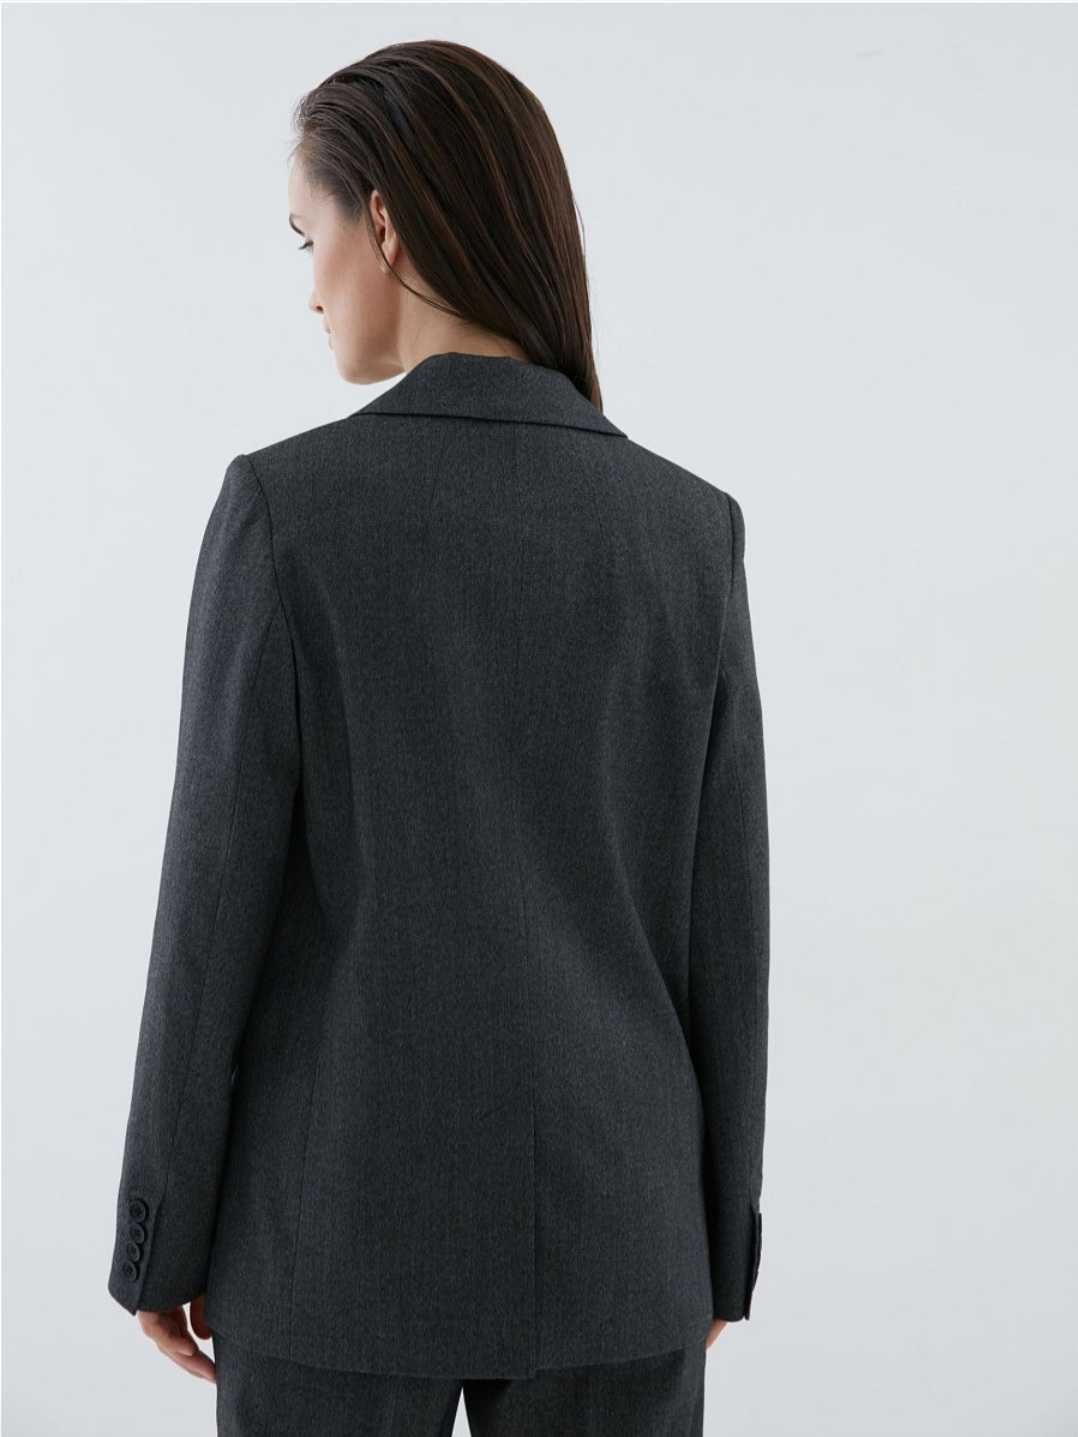 Новый пиджак Zarina р-р48